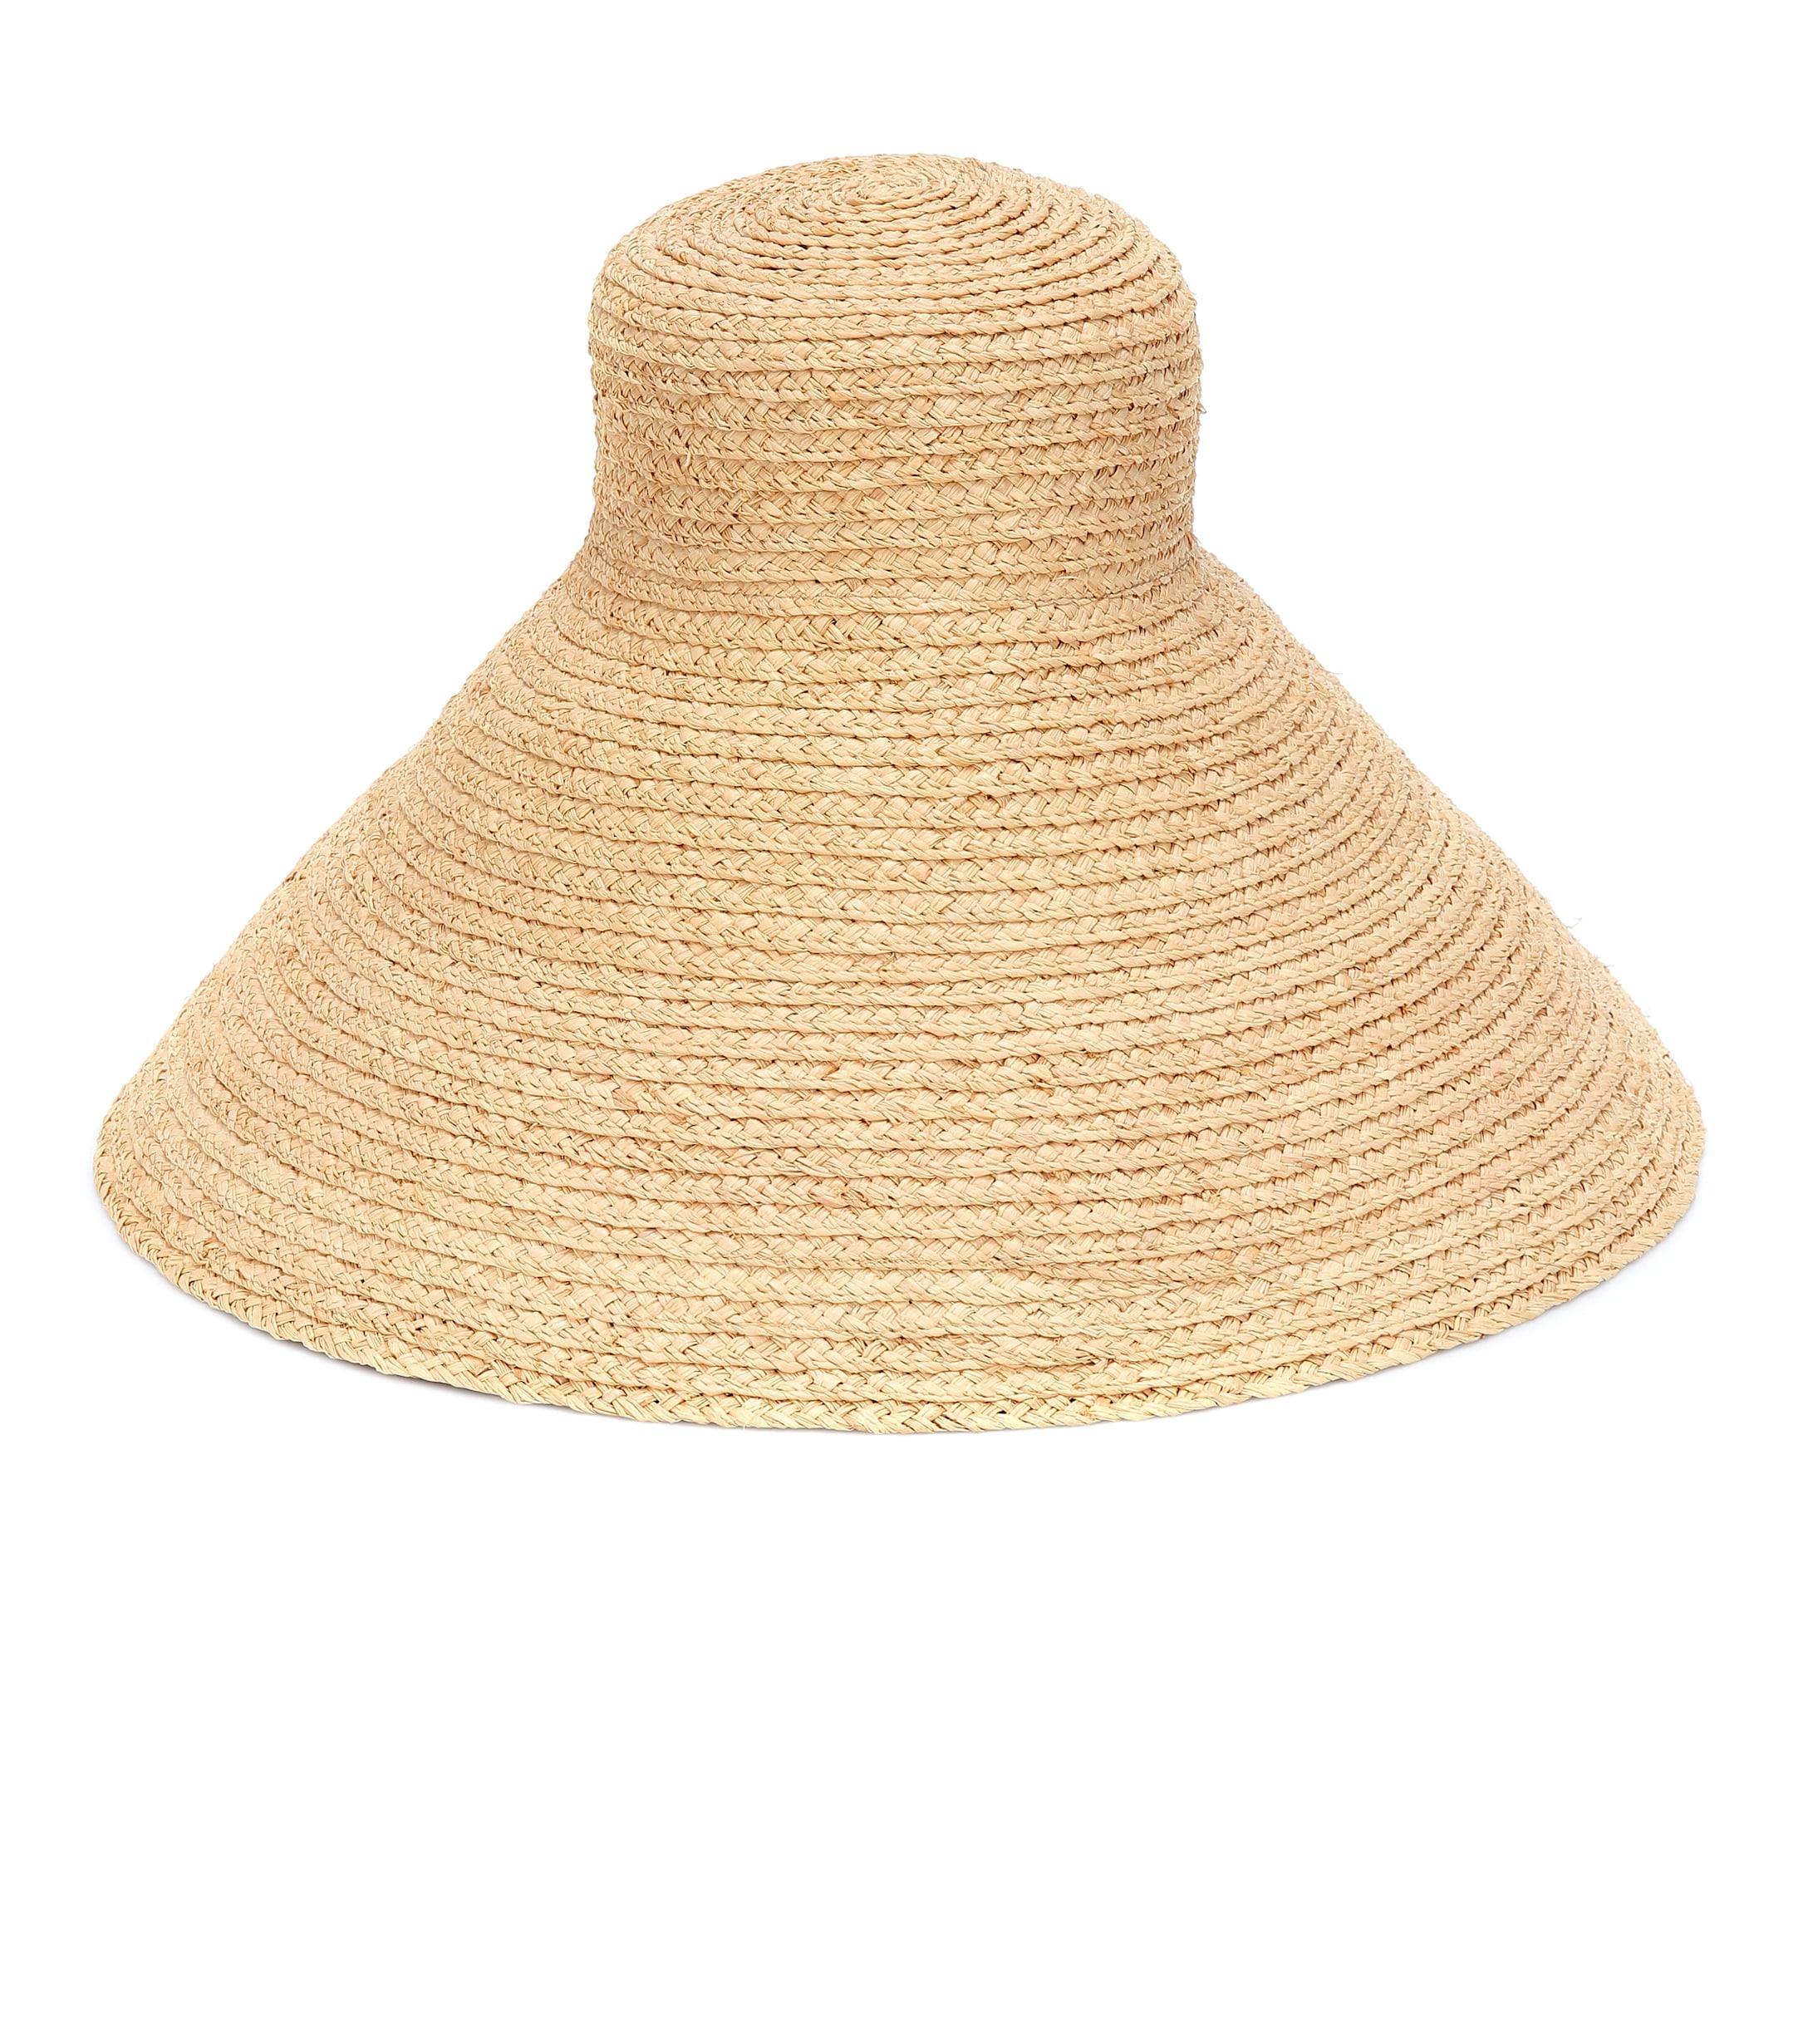 Jacquemus Le Chapeau Valensole Raffia Hat in Natural - Lyst